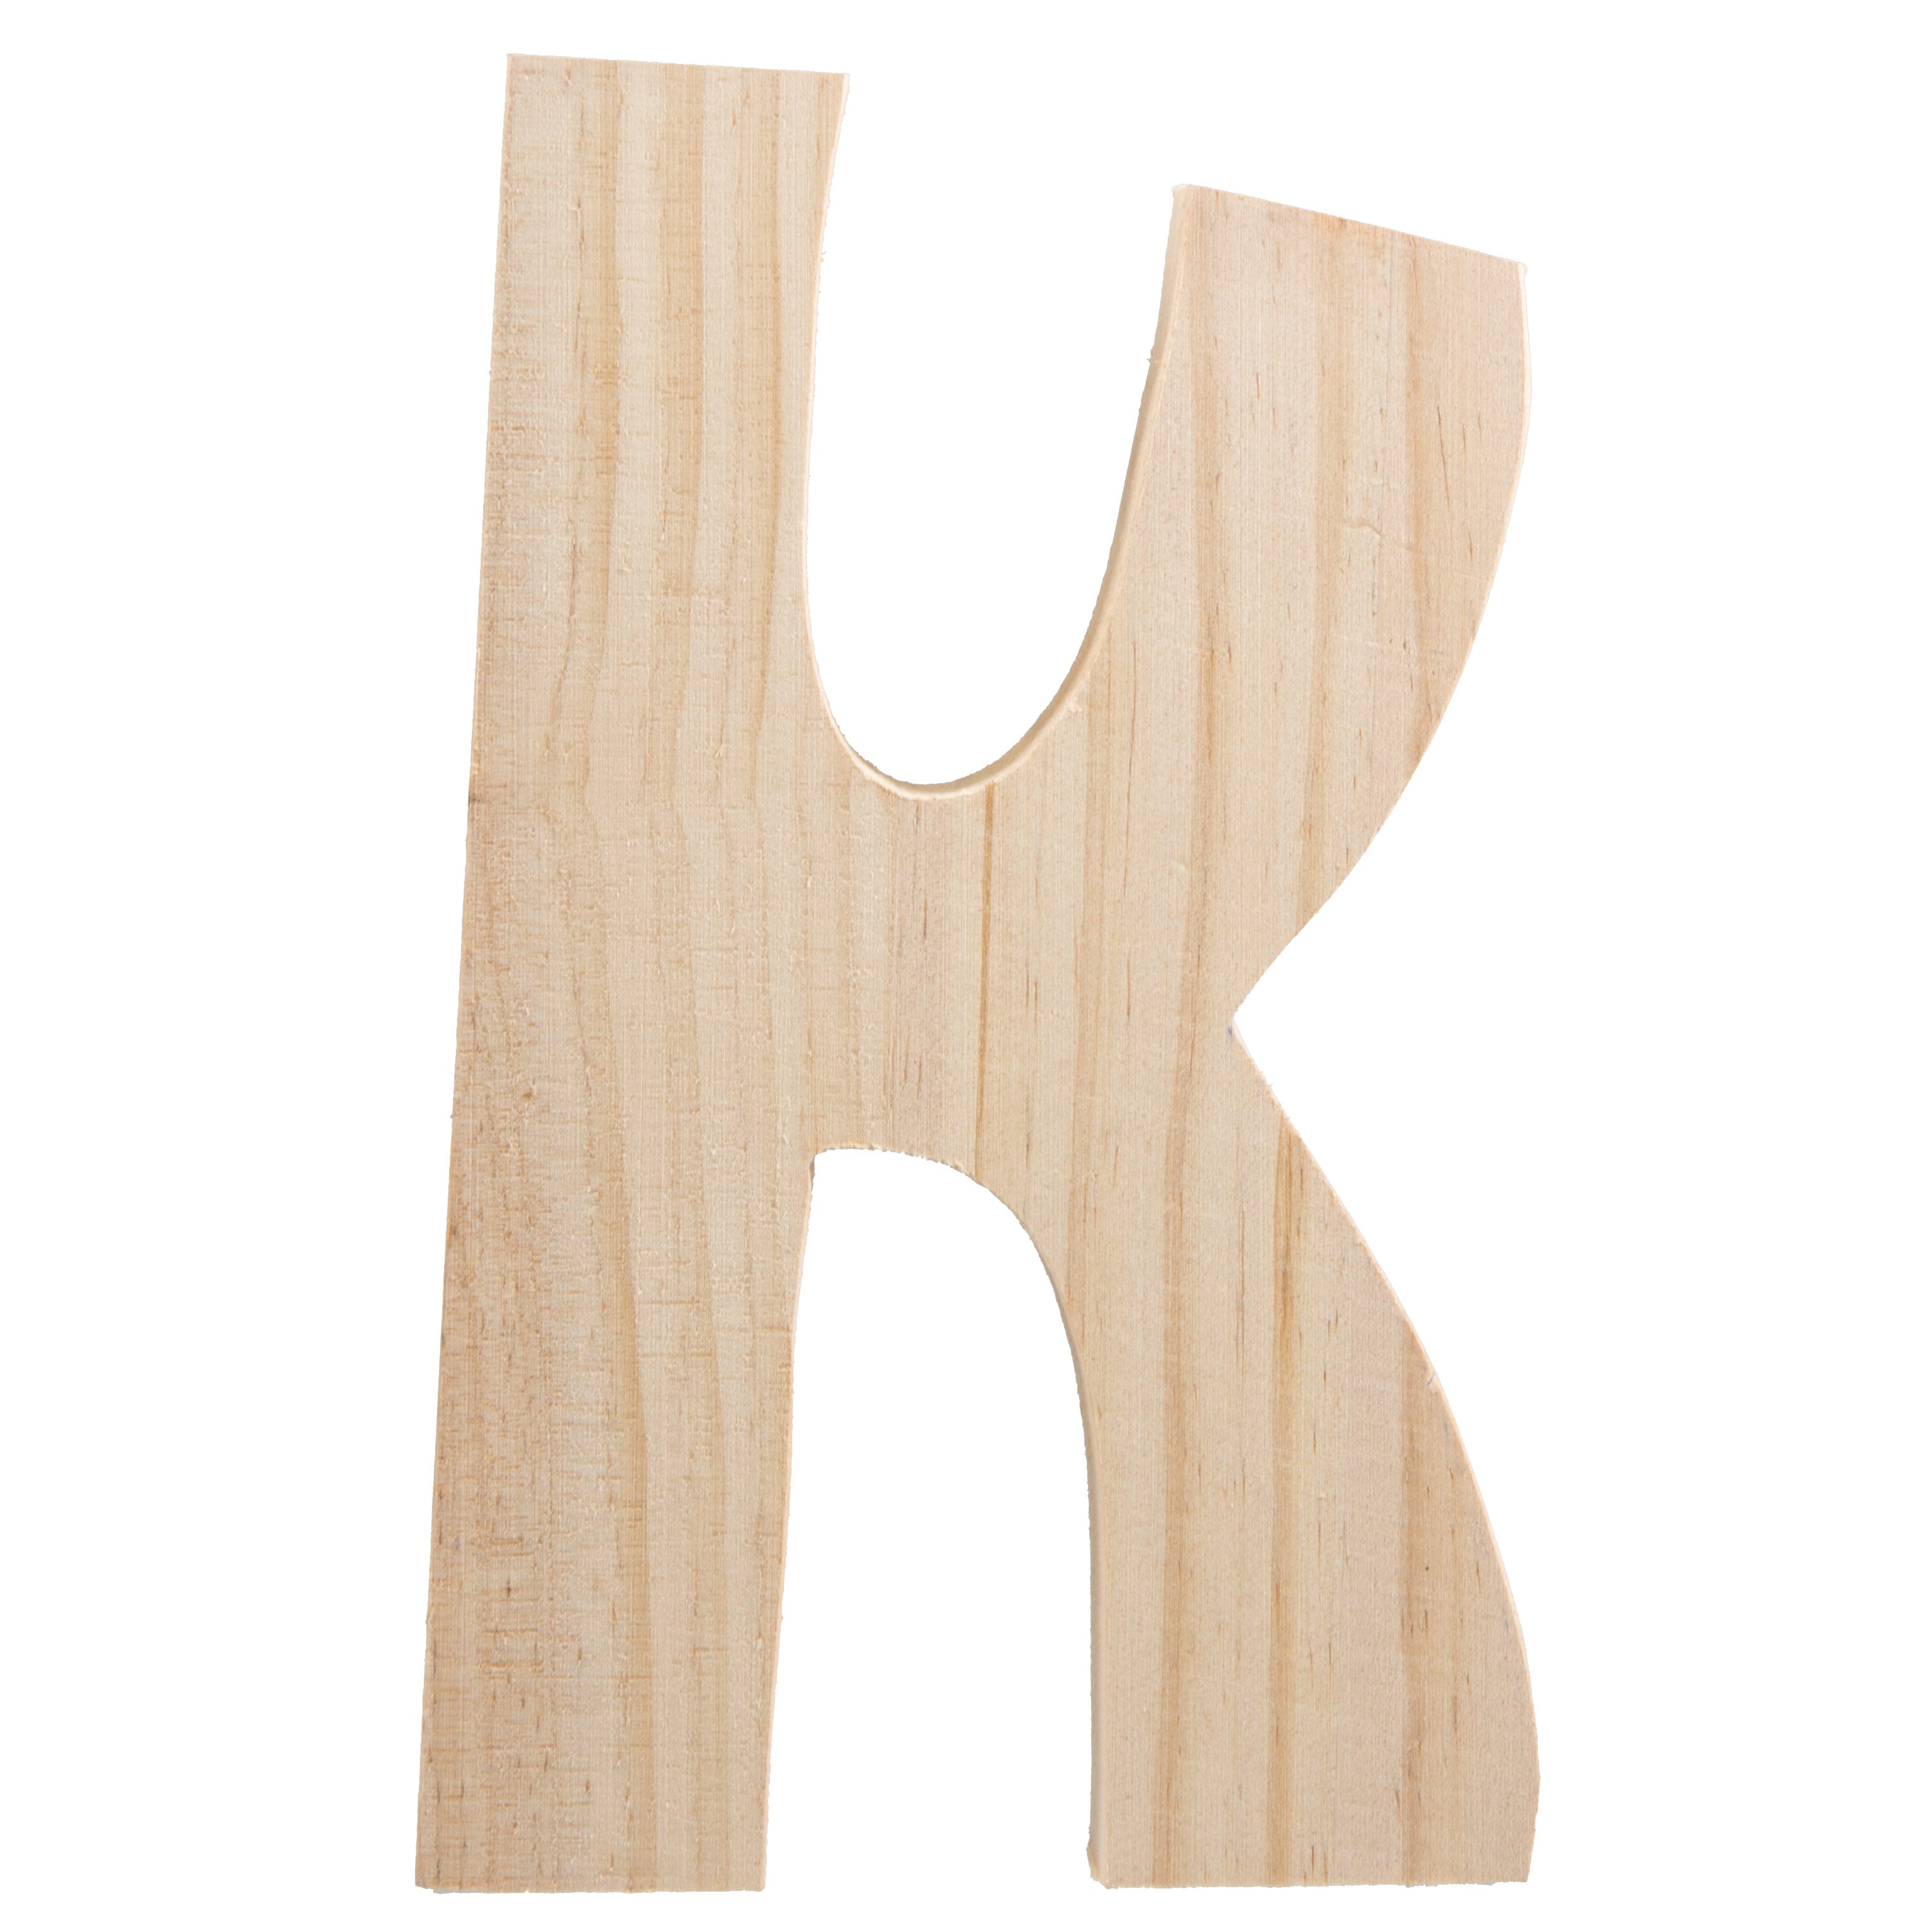 7.75" Chunky Wooden Letter: K